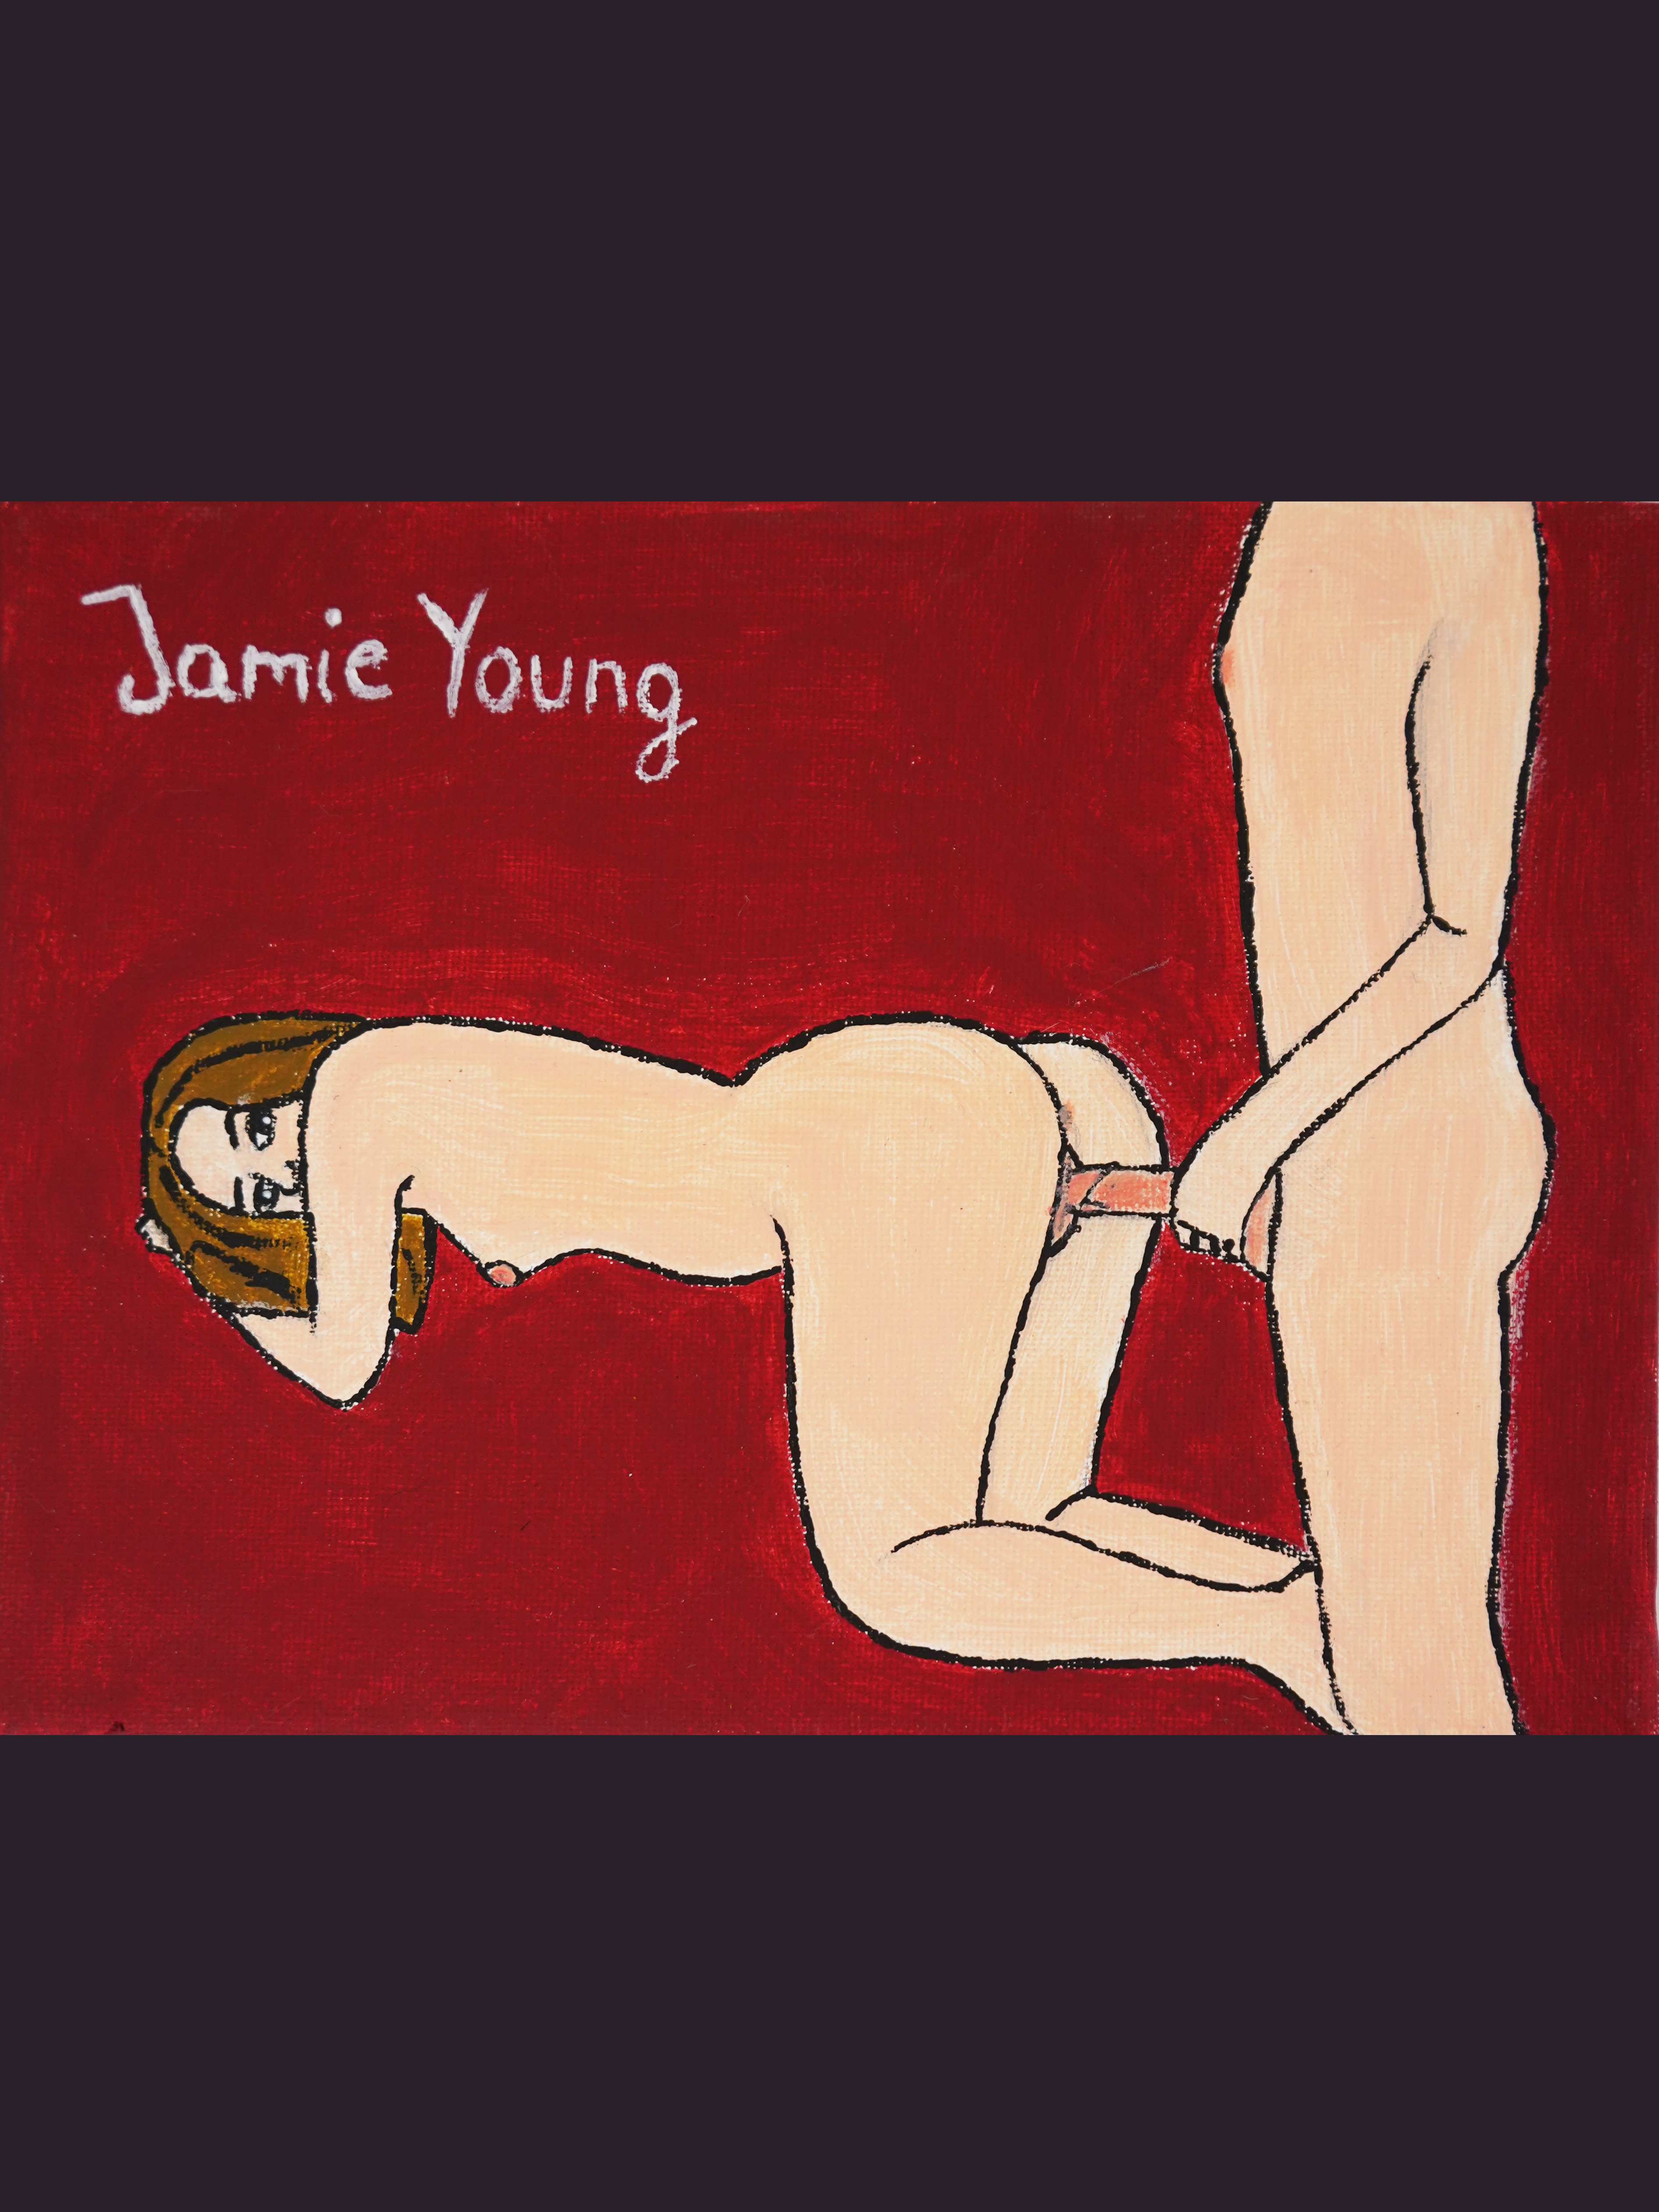 https://jamie-young.com/wp-content/uploads/DSC02589.jpg